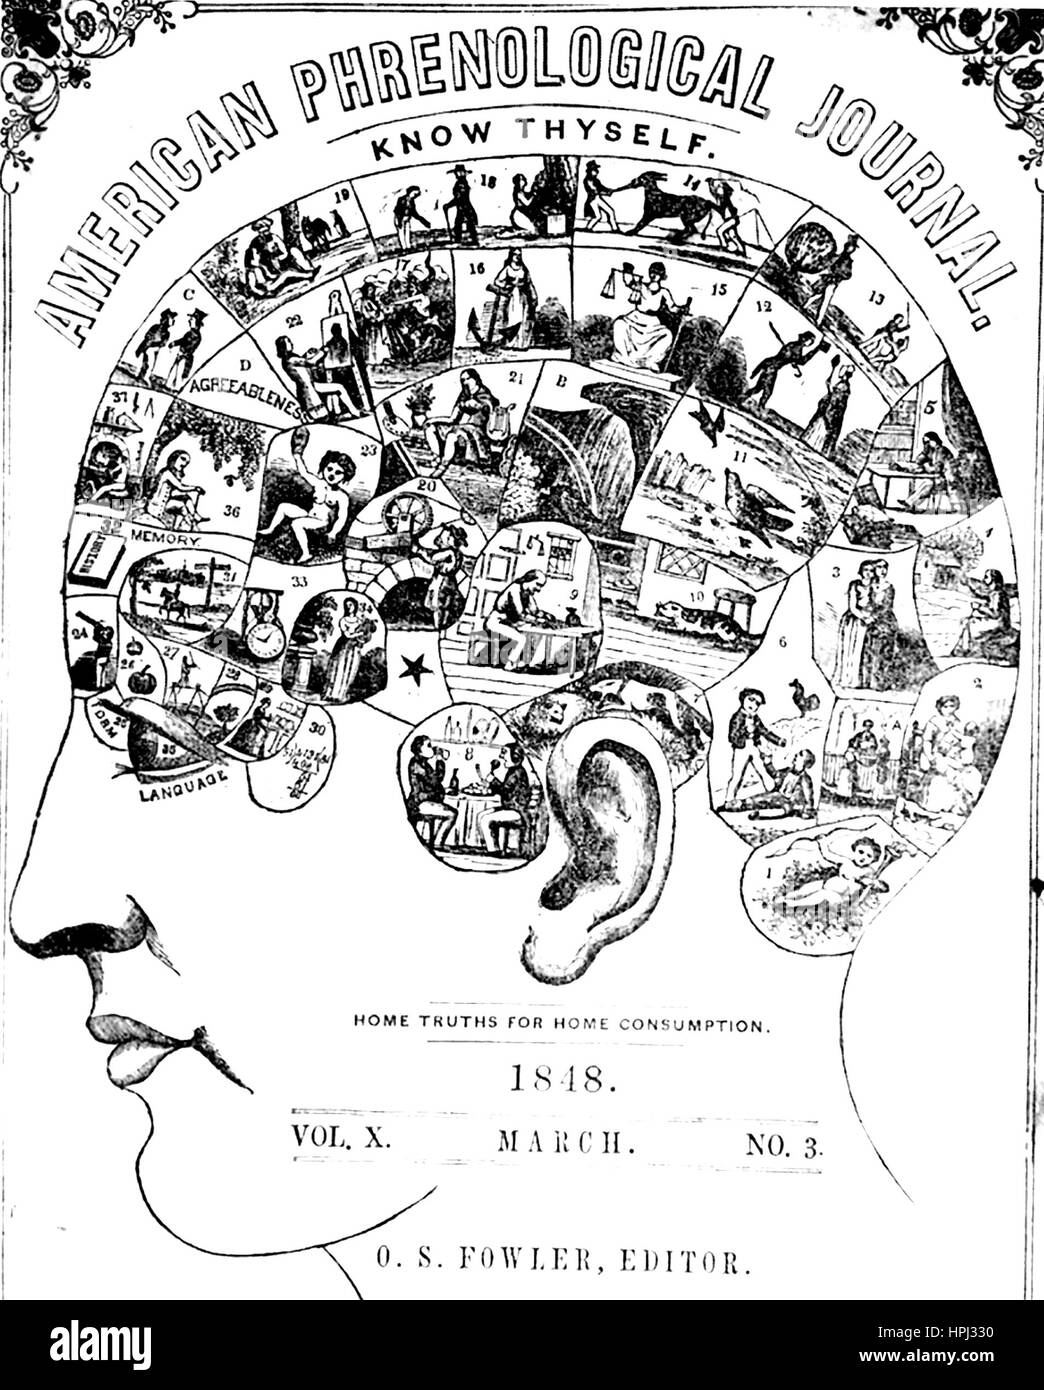 Cubierta de la frenología Phrenological American Journal, marzo de 1848 Foto de stock